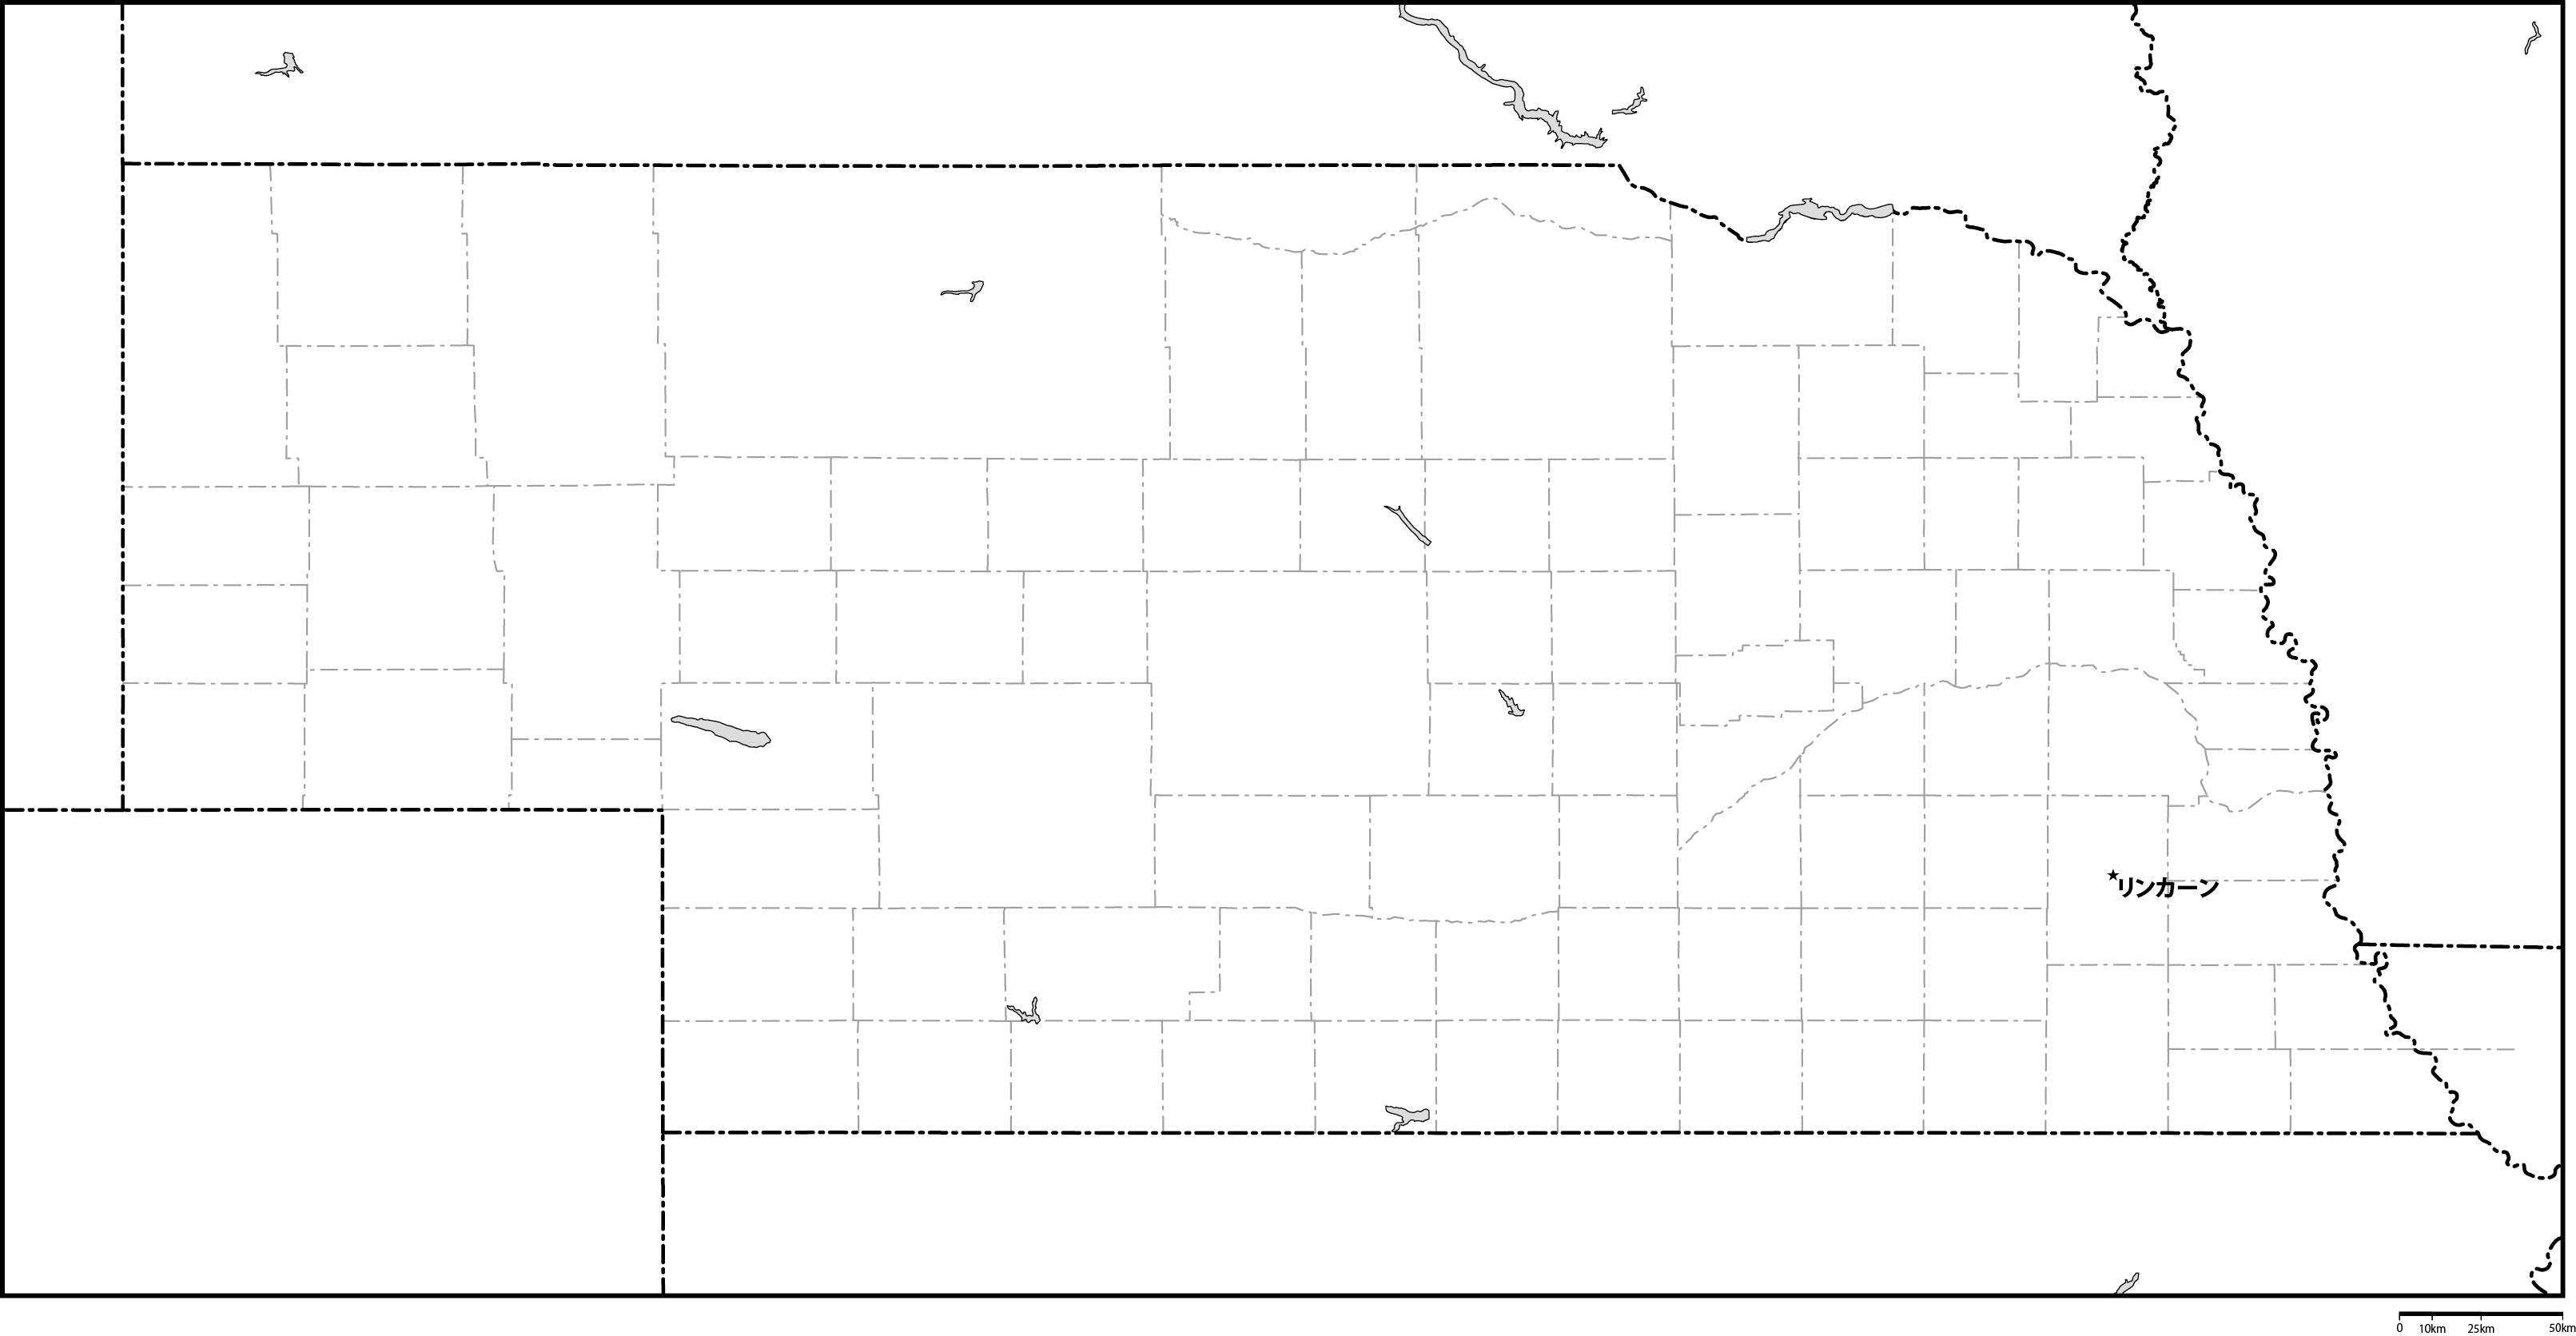 ネブラスカ州郡分け白地図州都あり(日本語)フリーデータの画像